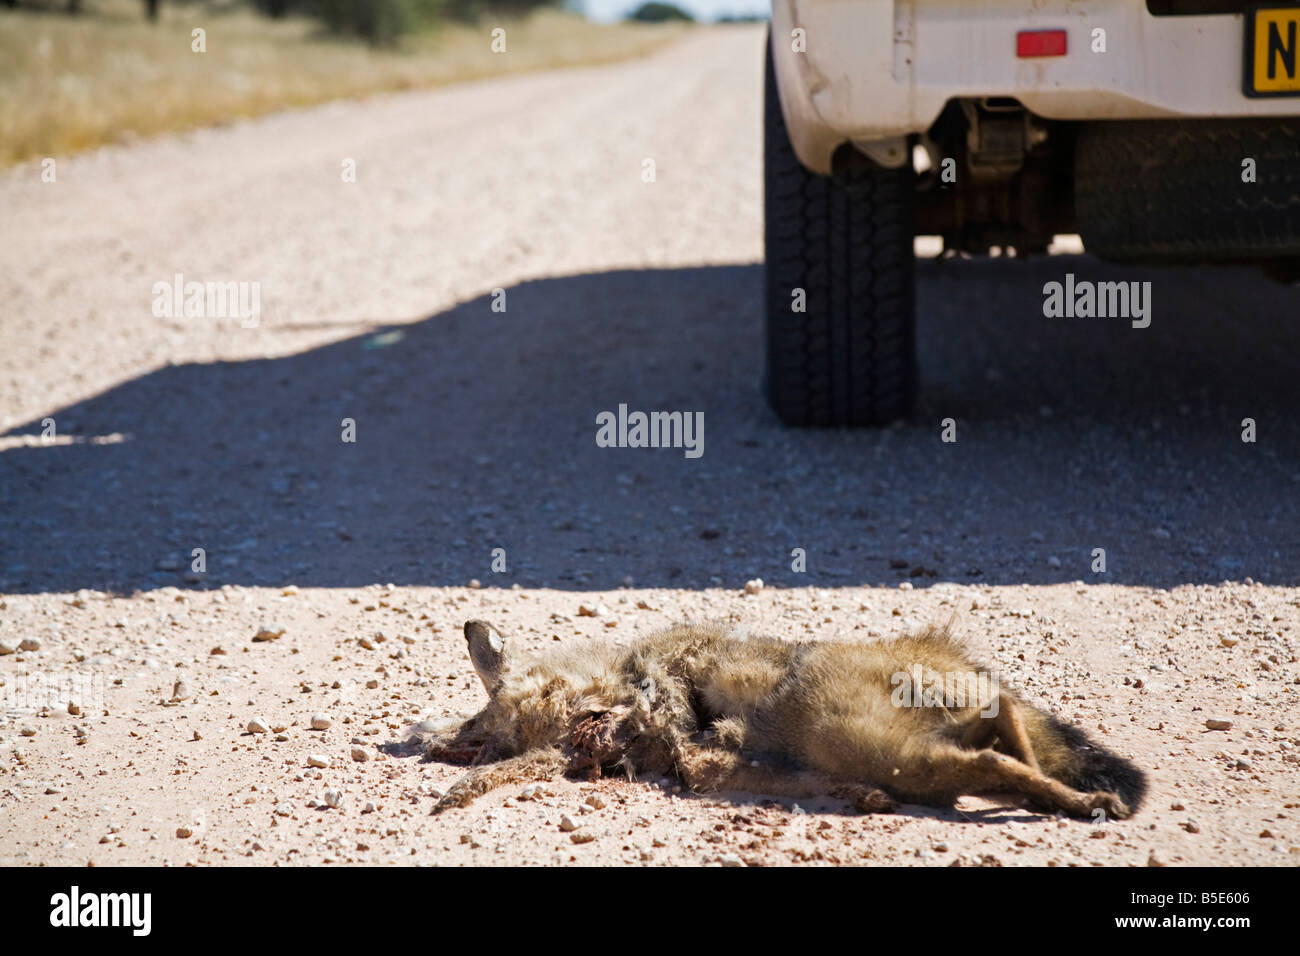 L'Afrique, la Namibie, l'Afrique, la Namibie, Dead bat eared fox (Otocyon megalotis), Roadkill, close-up Banque D'Images